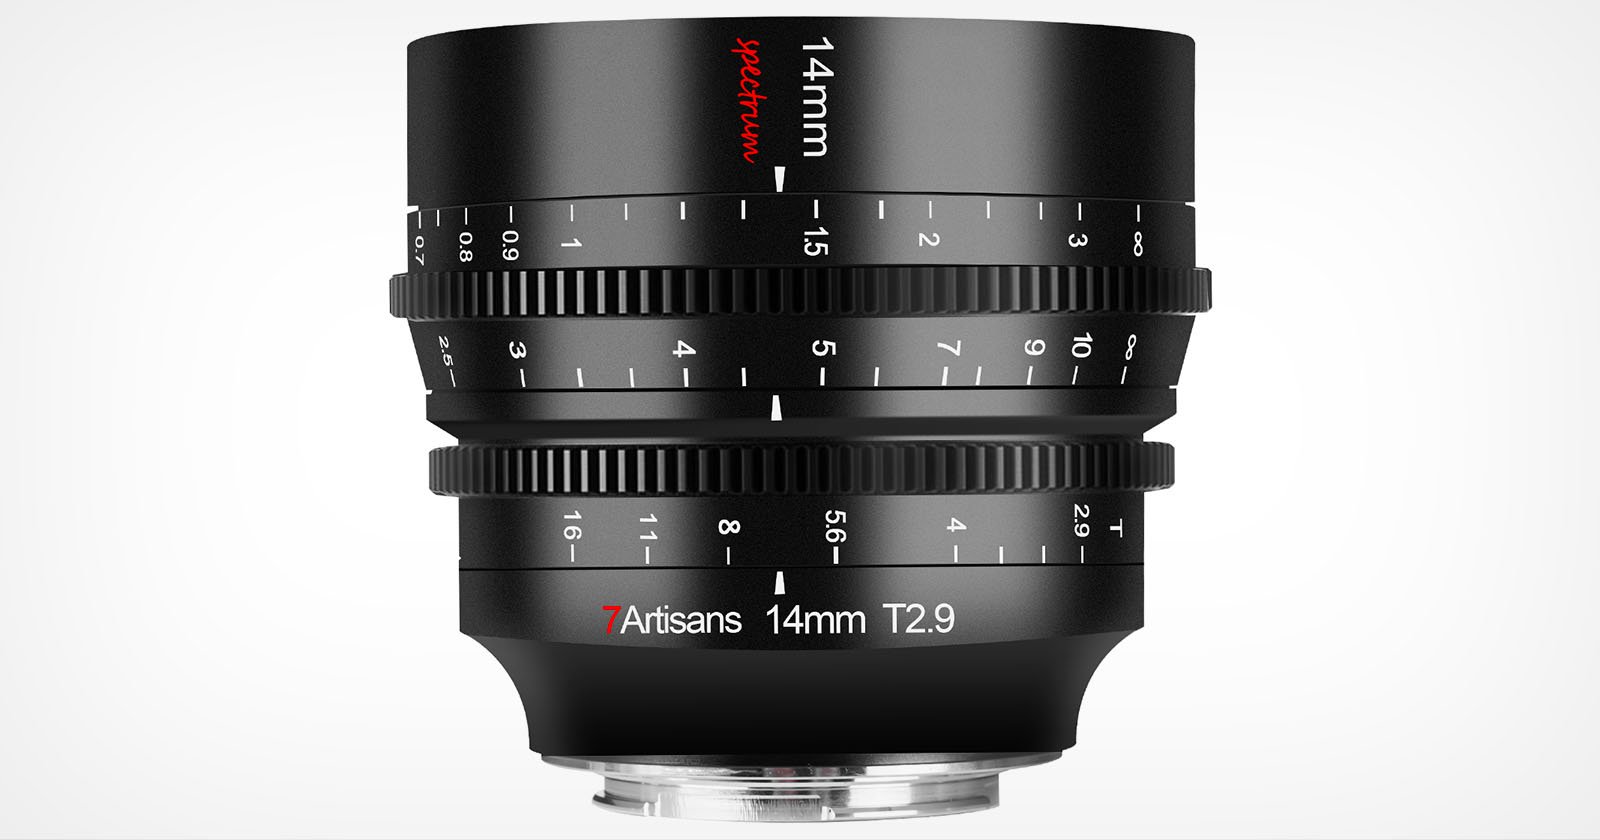  7artisans 14mm ultra-wide cine lens full-frame cameras 